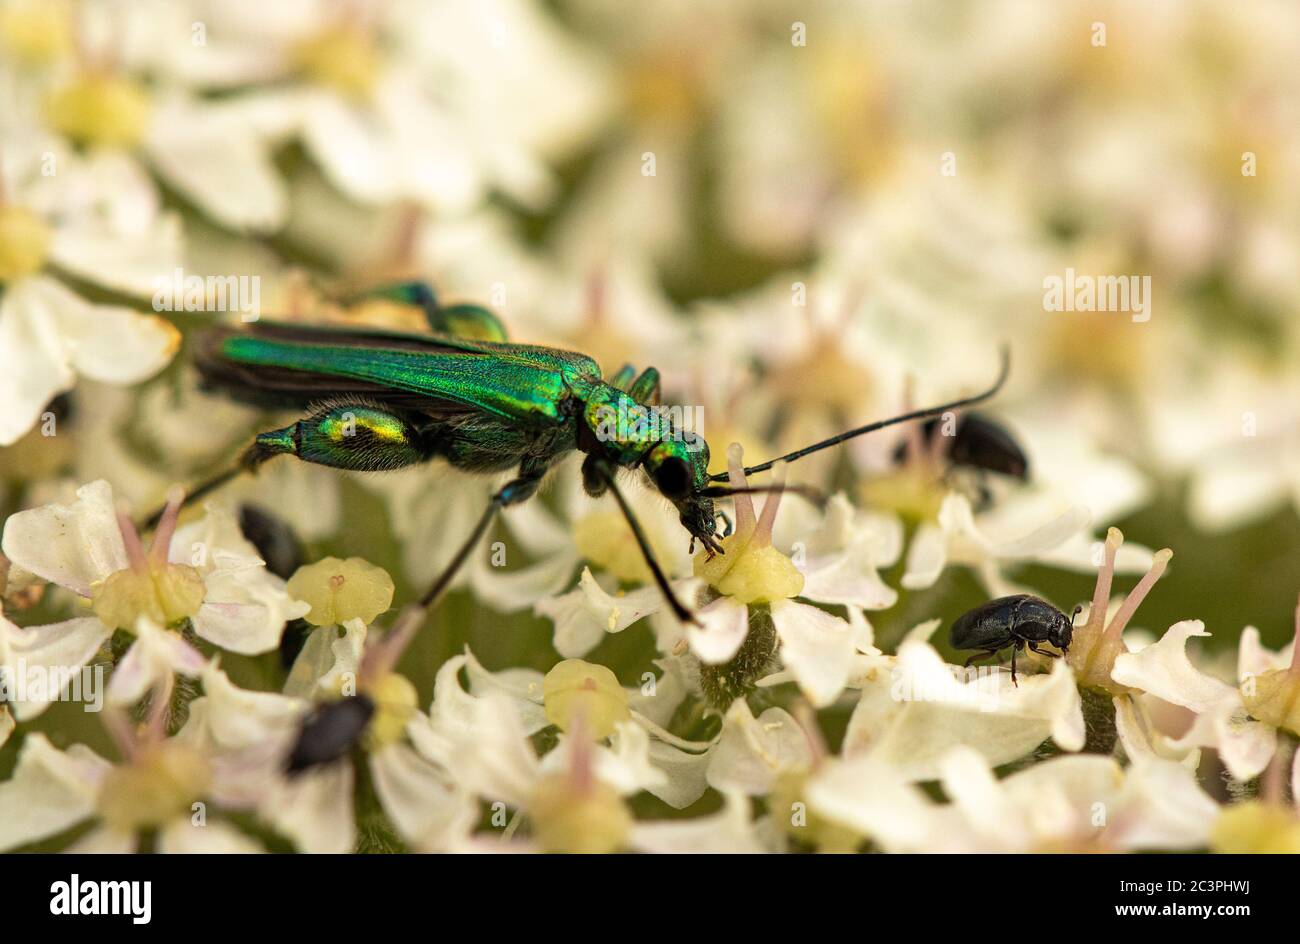 Familia Oedemeridae, escarabajo de patas gruesas, verde, metálico, encaramado en una flor Foto de stock